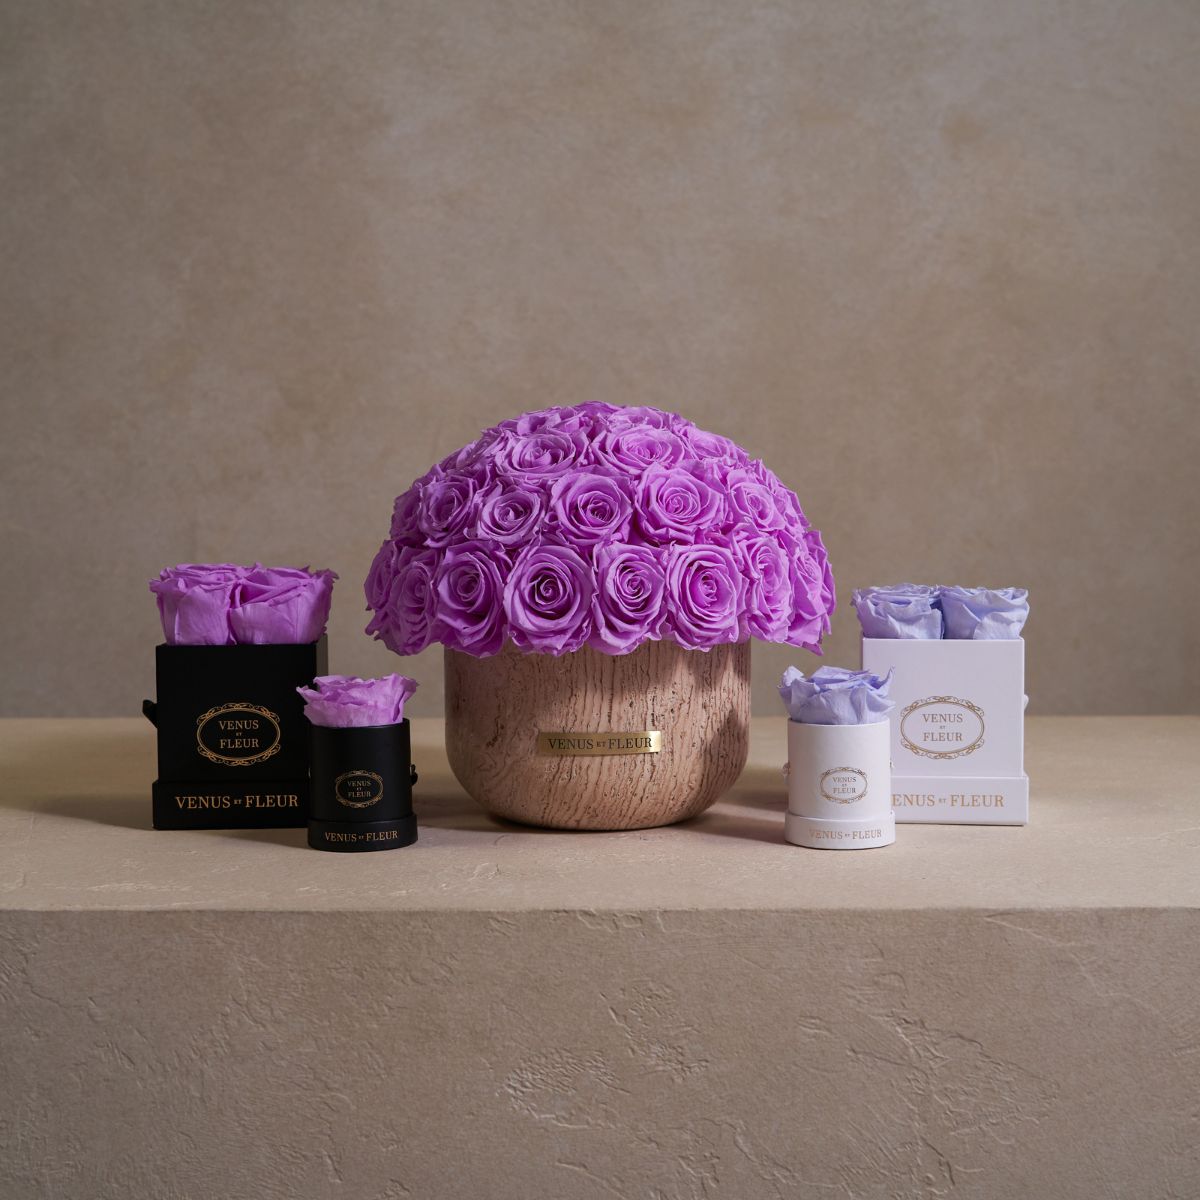 Five Sizes of Purple Eternity Rose Arrangements - Venus et Fleur